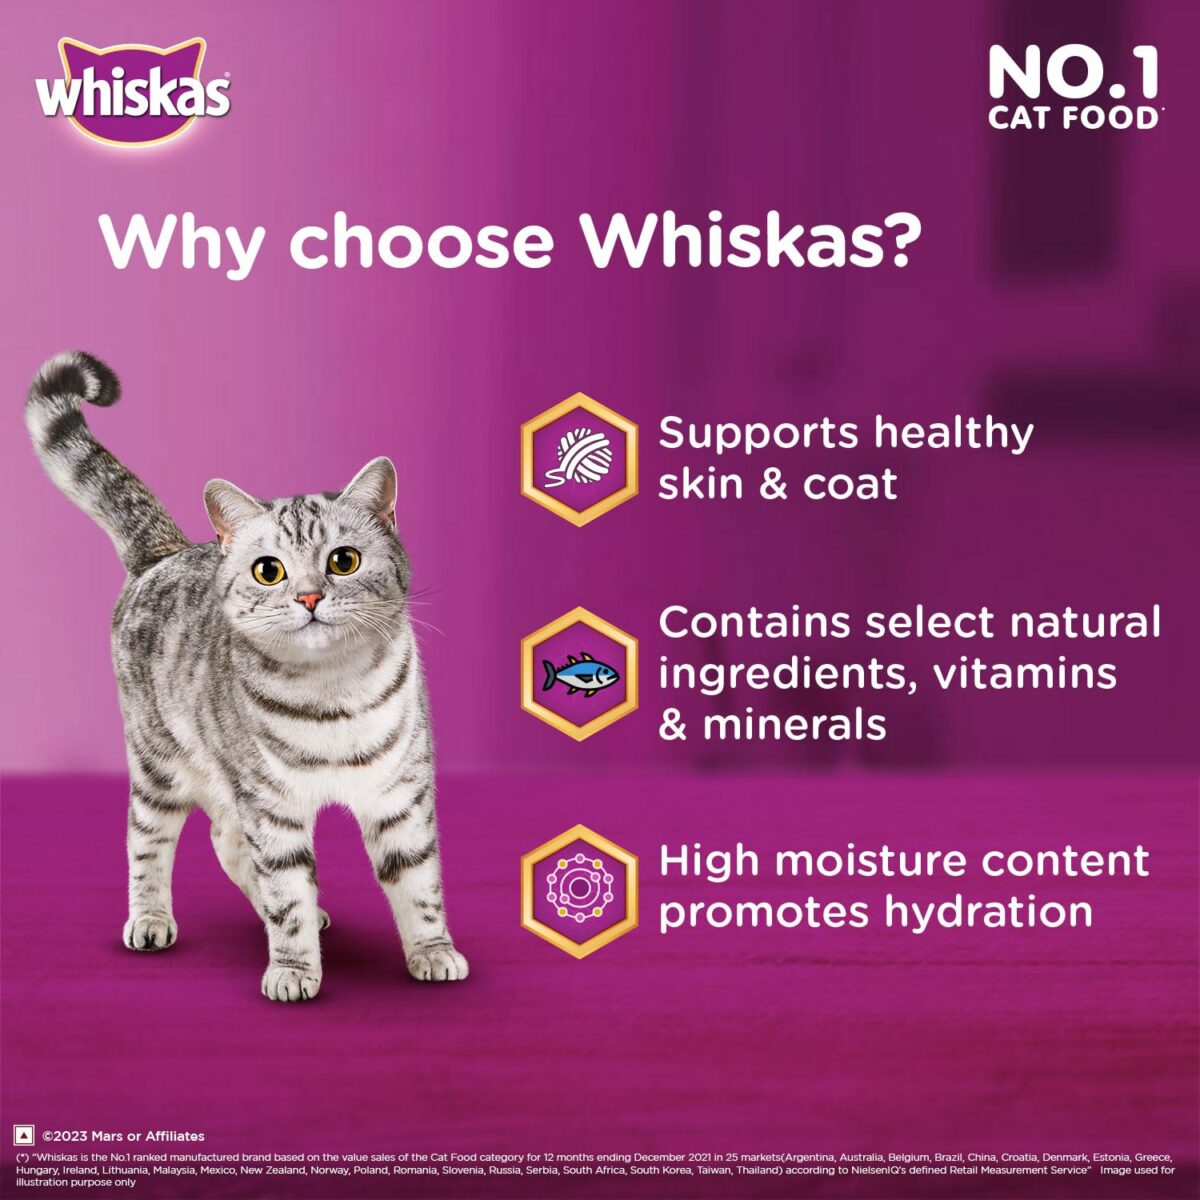 Whiskas Tuna Adult Wet Cat Food